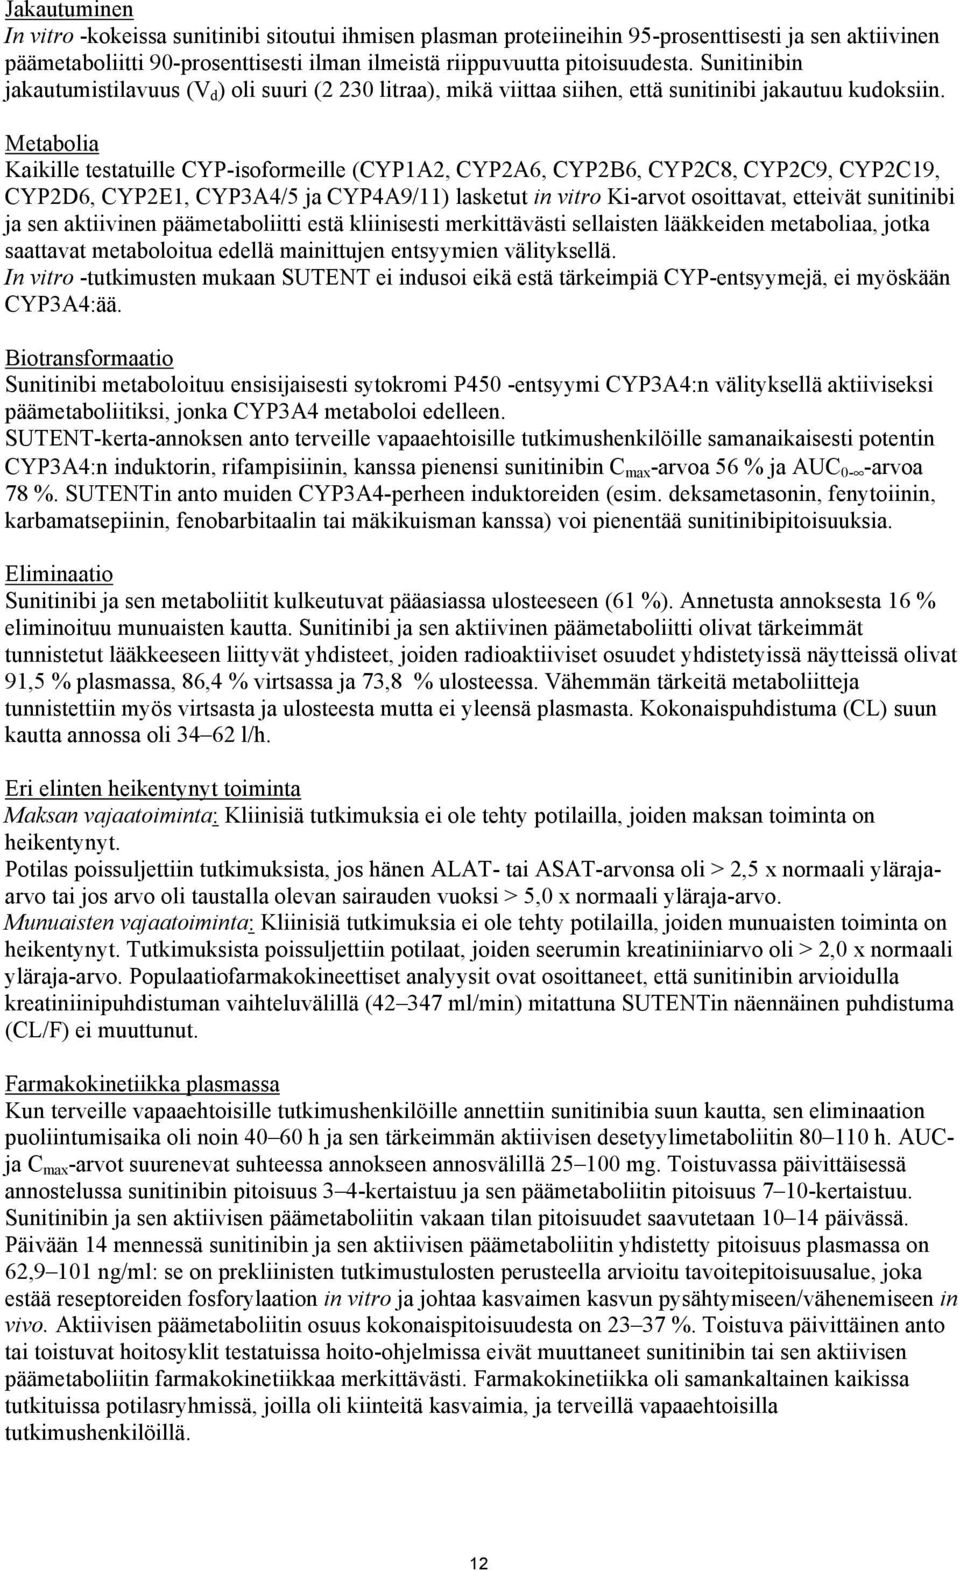 Metabolia Kaikille testatuille CYP-isoformeille (CYP1A2, CYP2A6, CYP2B6, CYP2C8, CYP2C9, CYP2C19, CYP2D6, CYP2E1, CYP3A4/5 ja CYP4A9/11) lasketut in vitro Ki-arvot osoittavat, etteivät sunitinibi ja